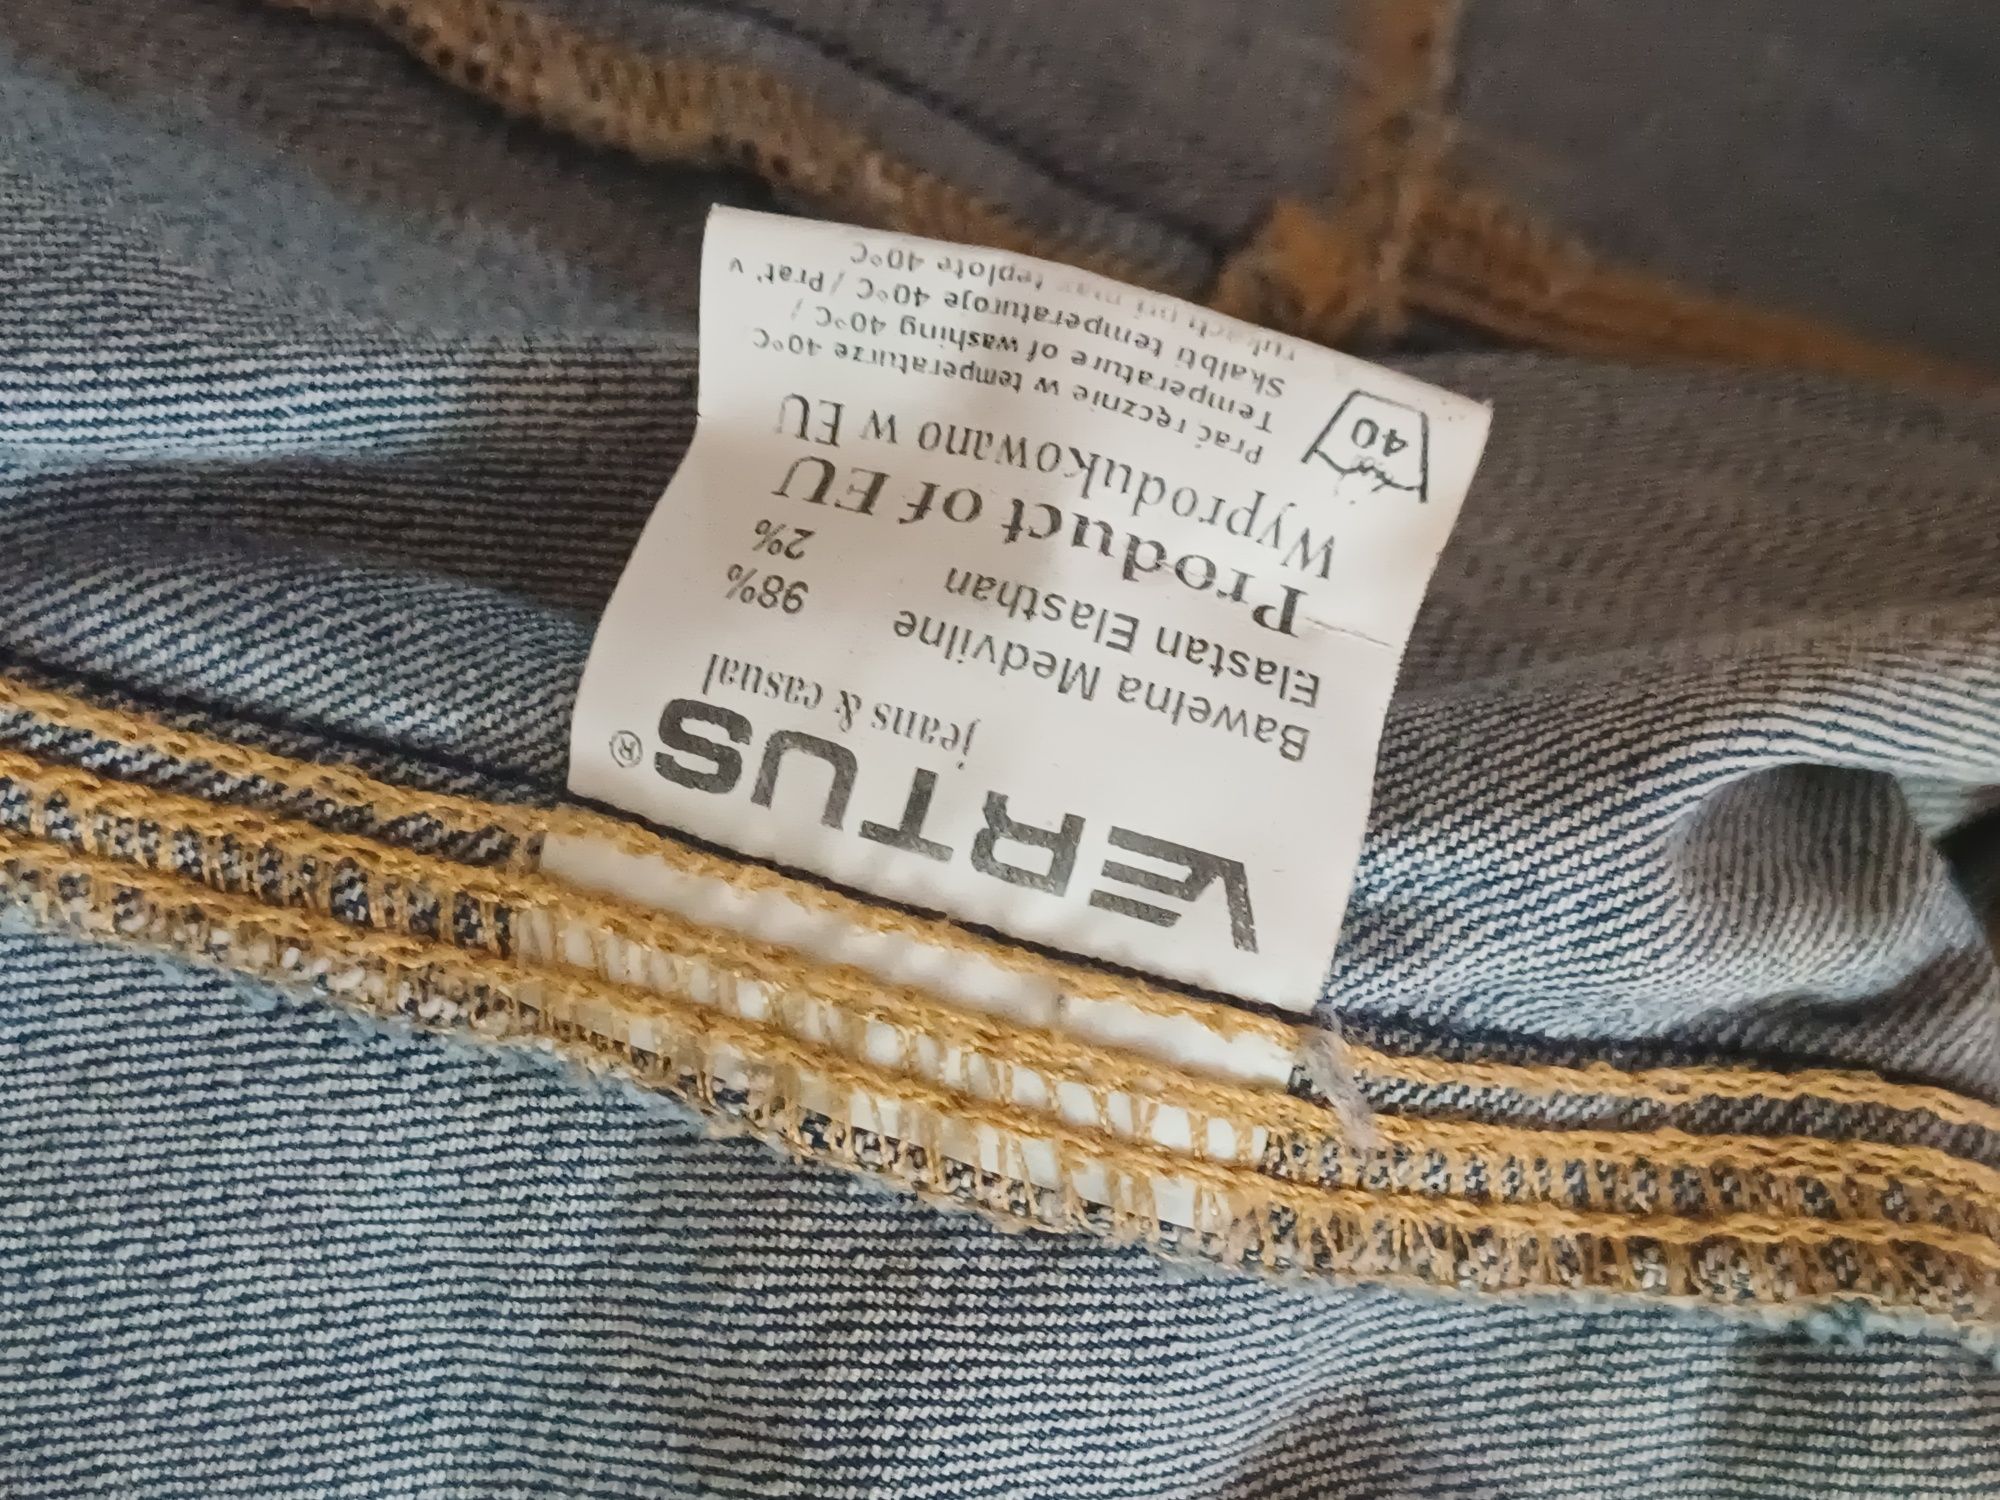 Bluza jeansowa katana rozmiar S -M VERTUS tylko 17 zł